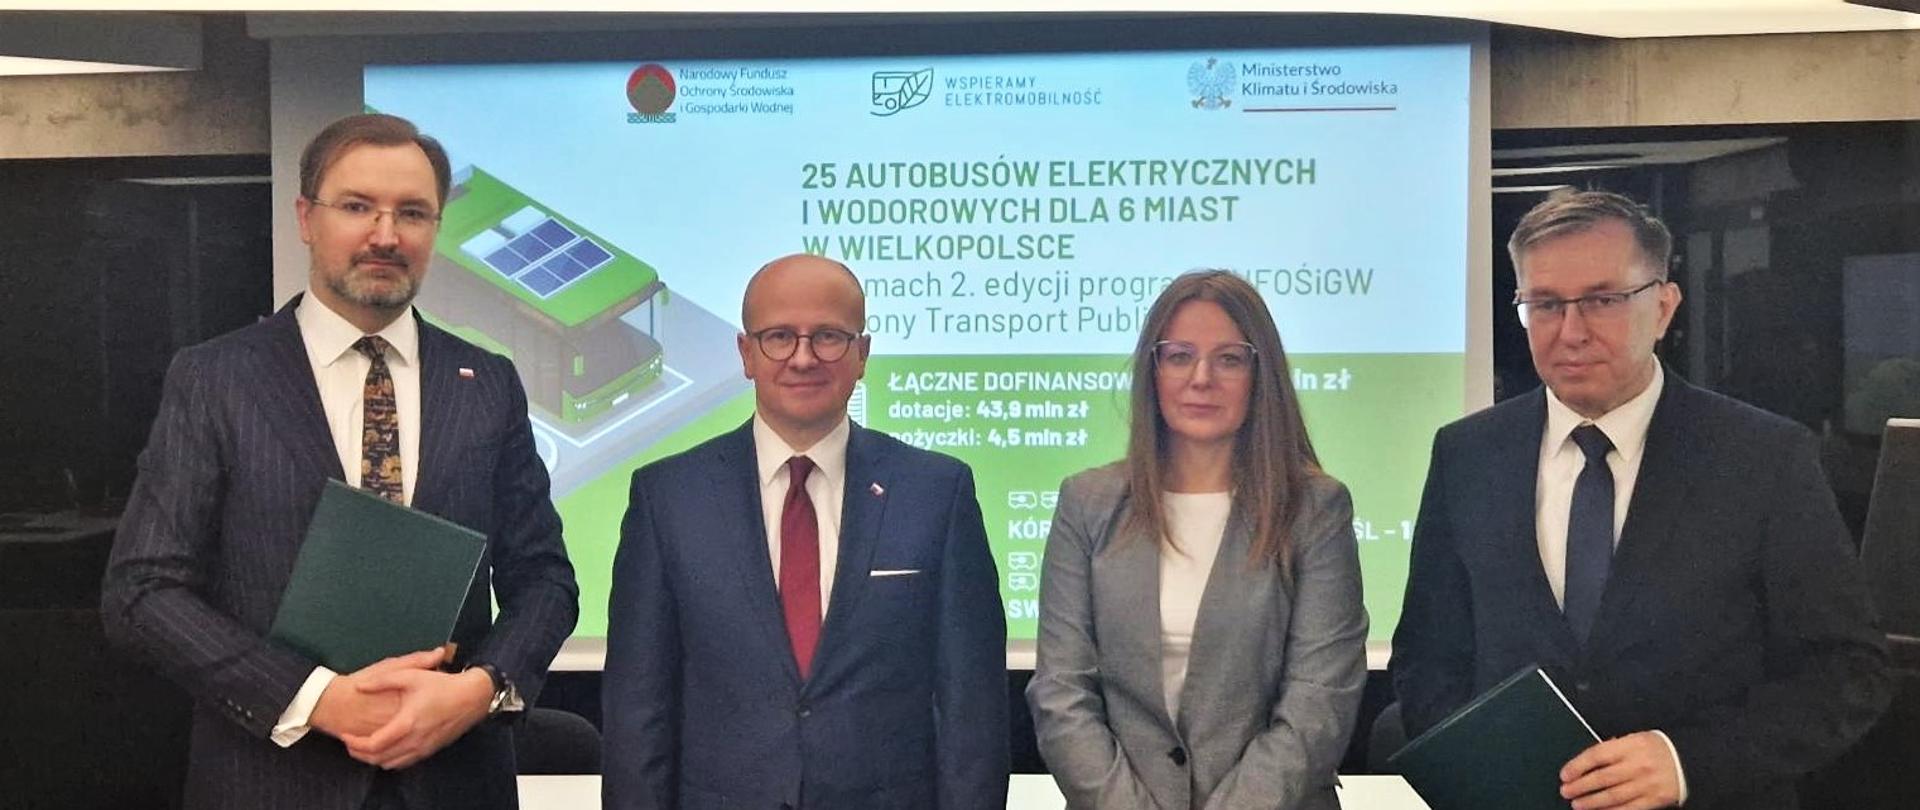 Sławomir Mazurek, Zastępca Prezesa NFOŚiGW podczas uroczystości podpisania umów na elektryczne i wodorowe autobusy dla sześciu miast w Wielkopolsce